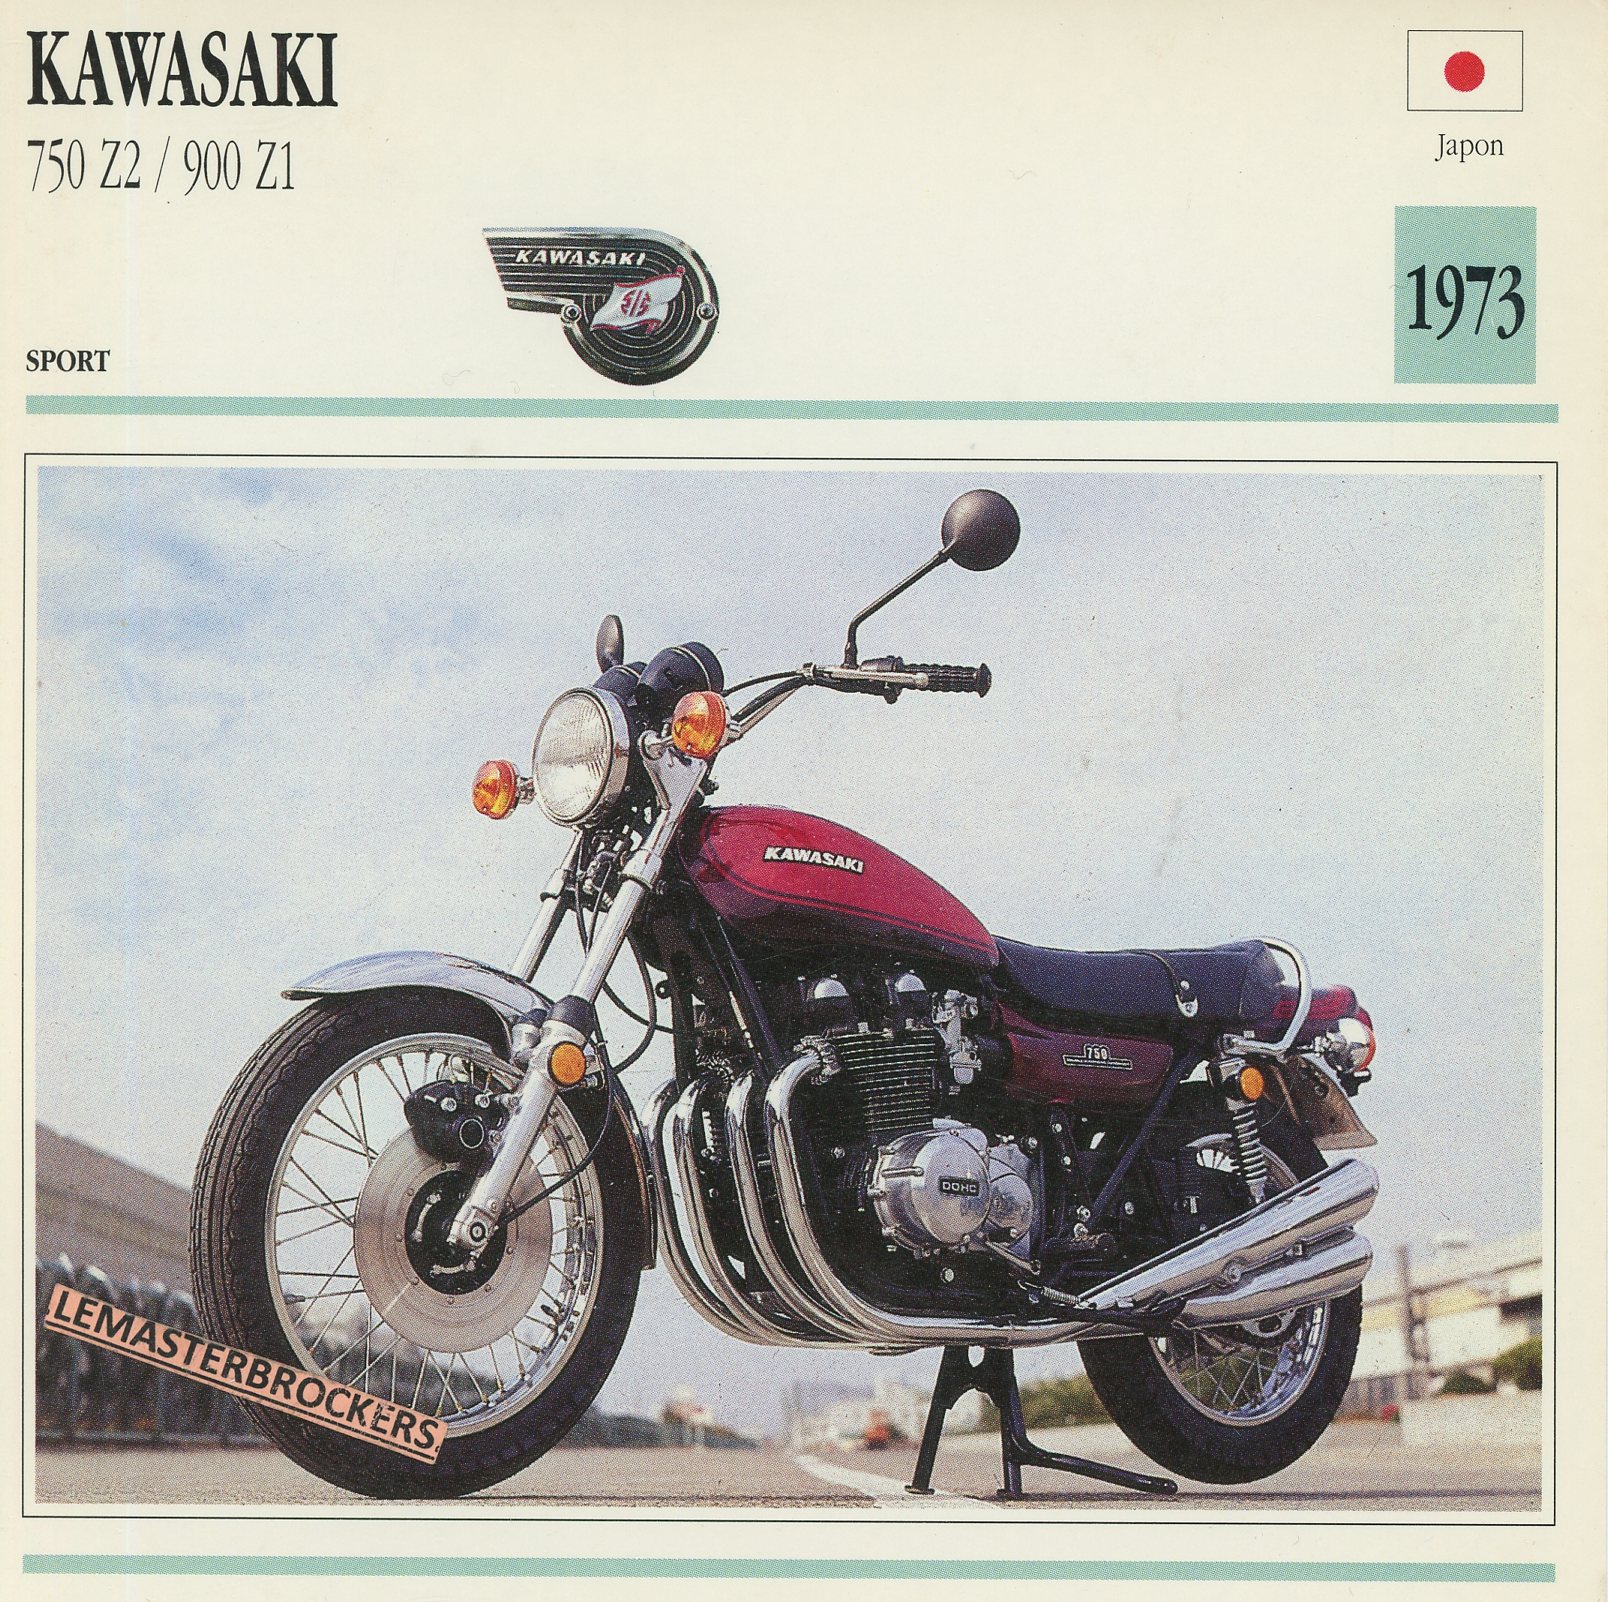 KAWASAKI-750-Z2-900-Z1-1973-FICHE-MOTO-KAWA-LEMASTERBROCKERS